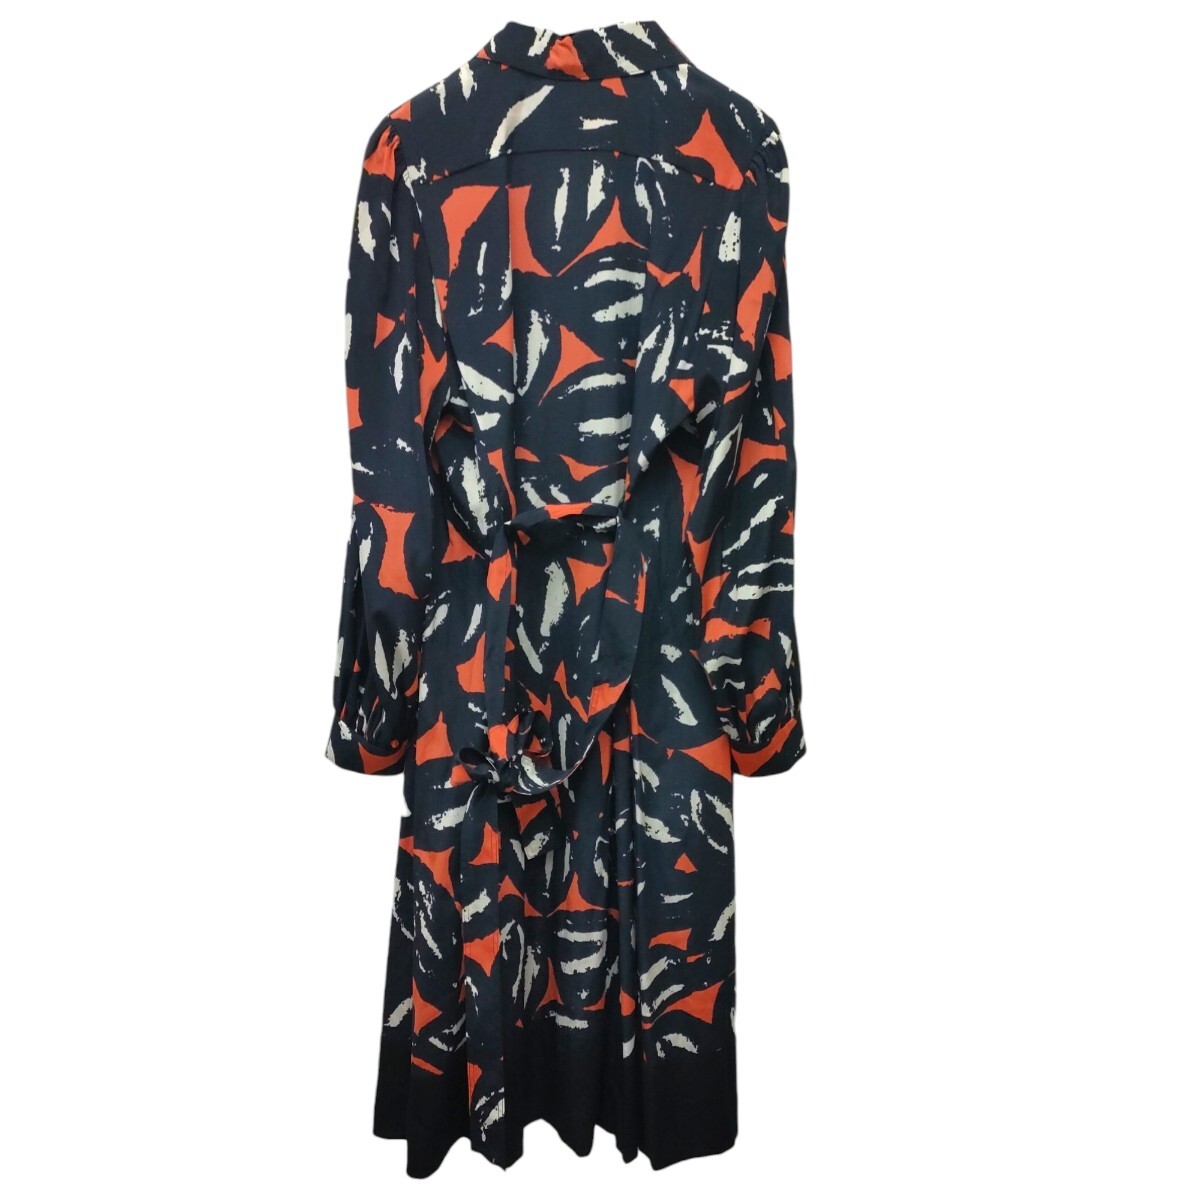 [ с биркой, есть перевод ]DKNY / Donna Karan New York женский шелк длинный рукав длинный рубашка One-piece 10 размер общий рисунок тонкий I-3830